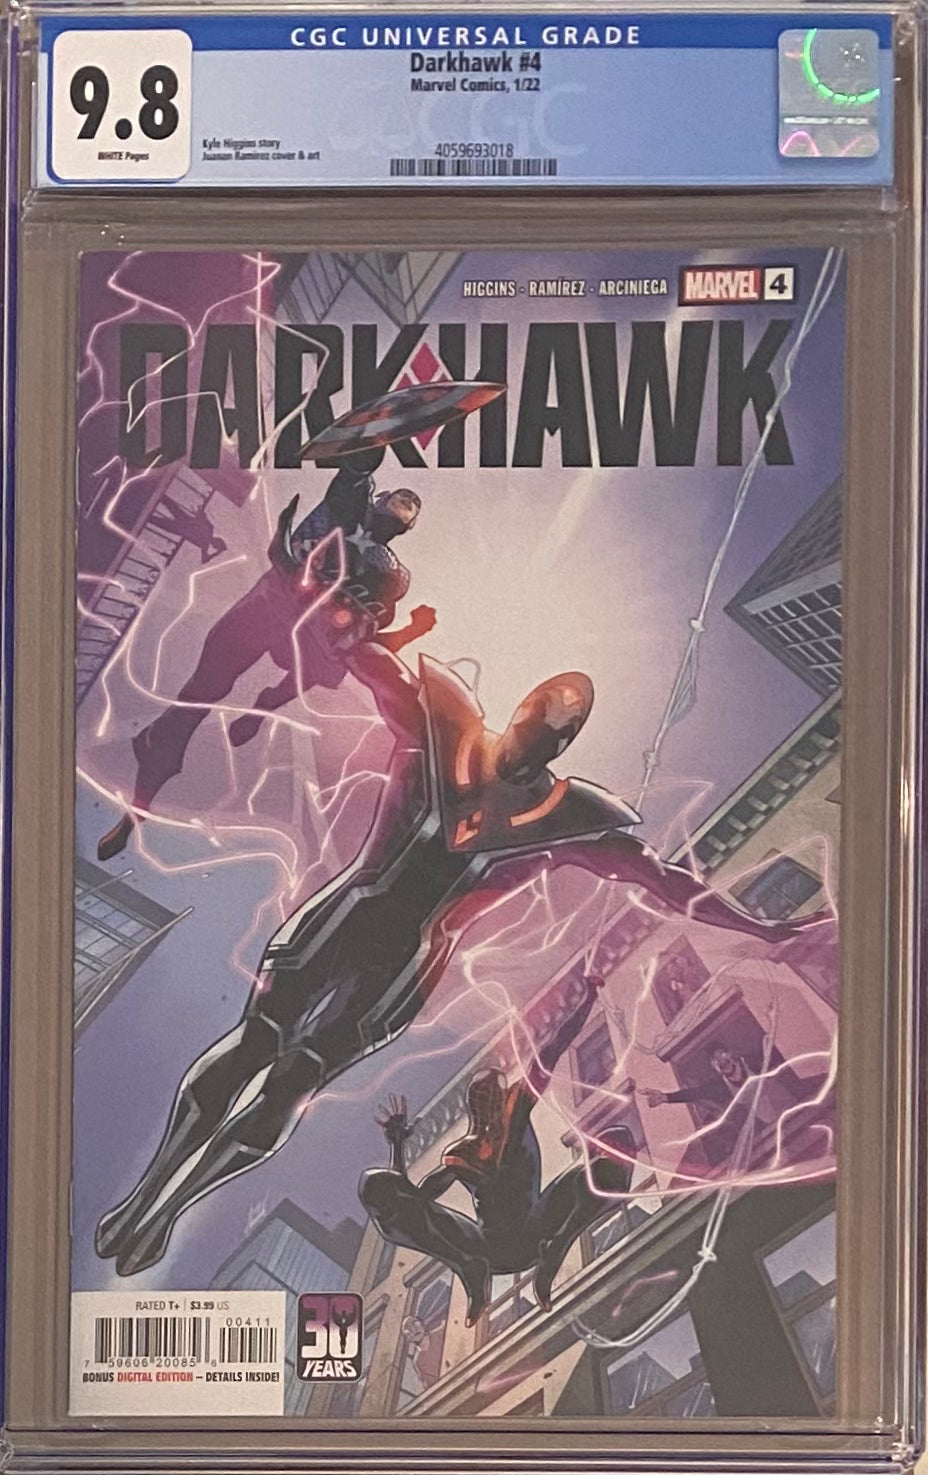 Darkhawk #4 CGC 9.8